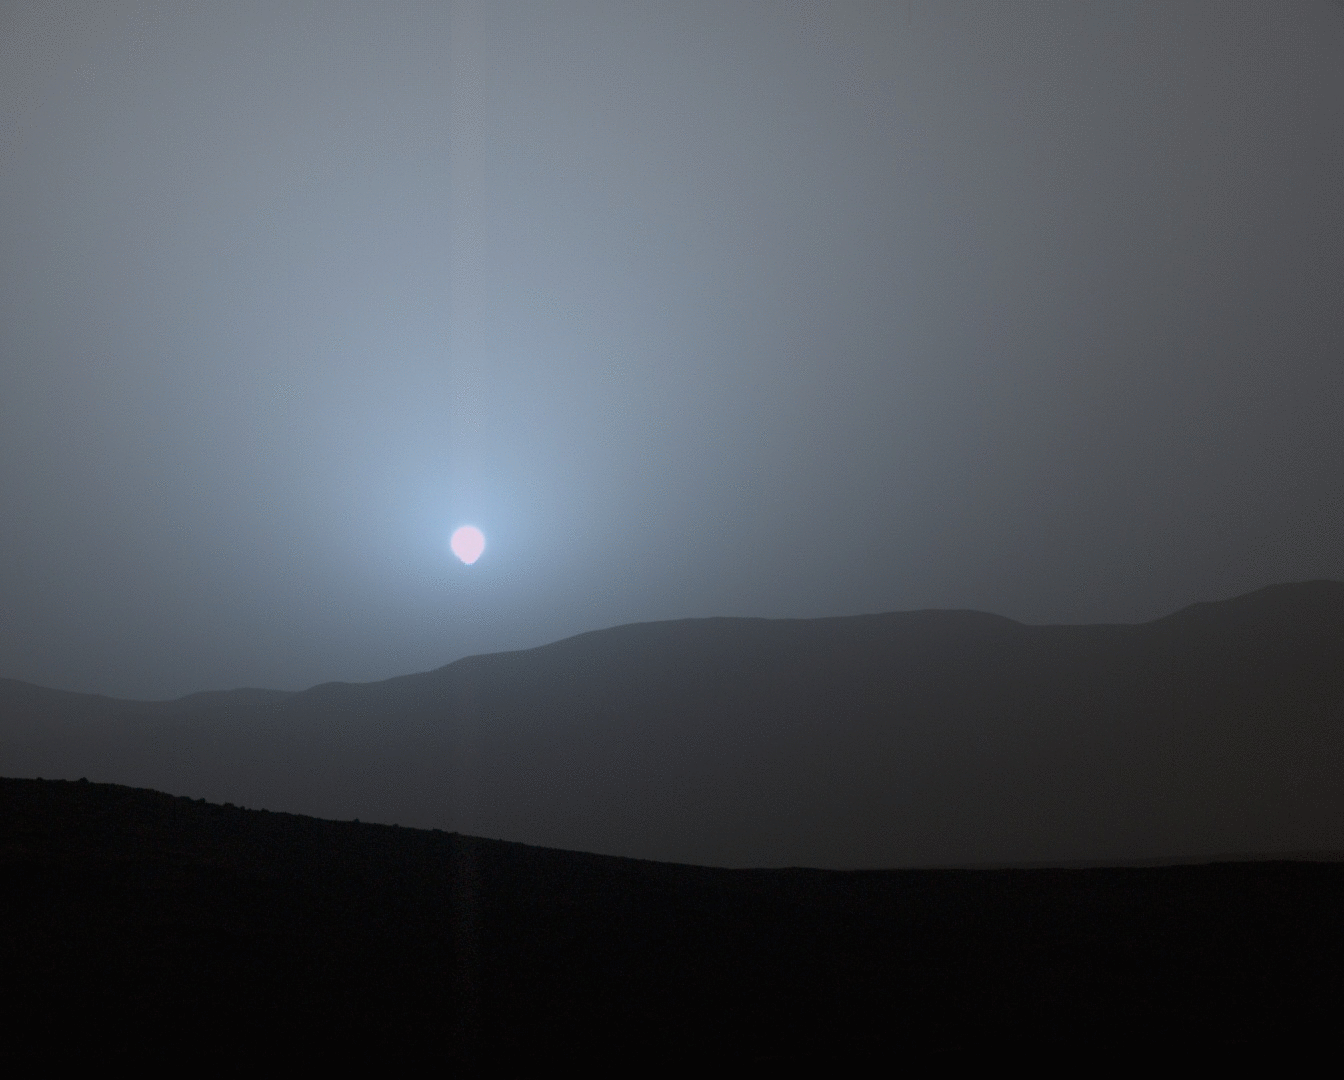 mars-sunset-msl-curiosity-martian-sky-pia19400.gif.647e844daad4acb89e91243dc9e9e8aa.gif